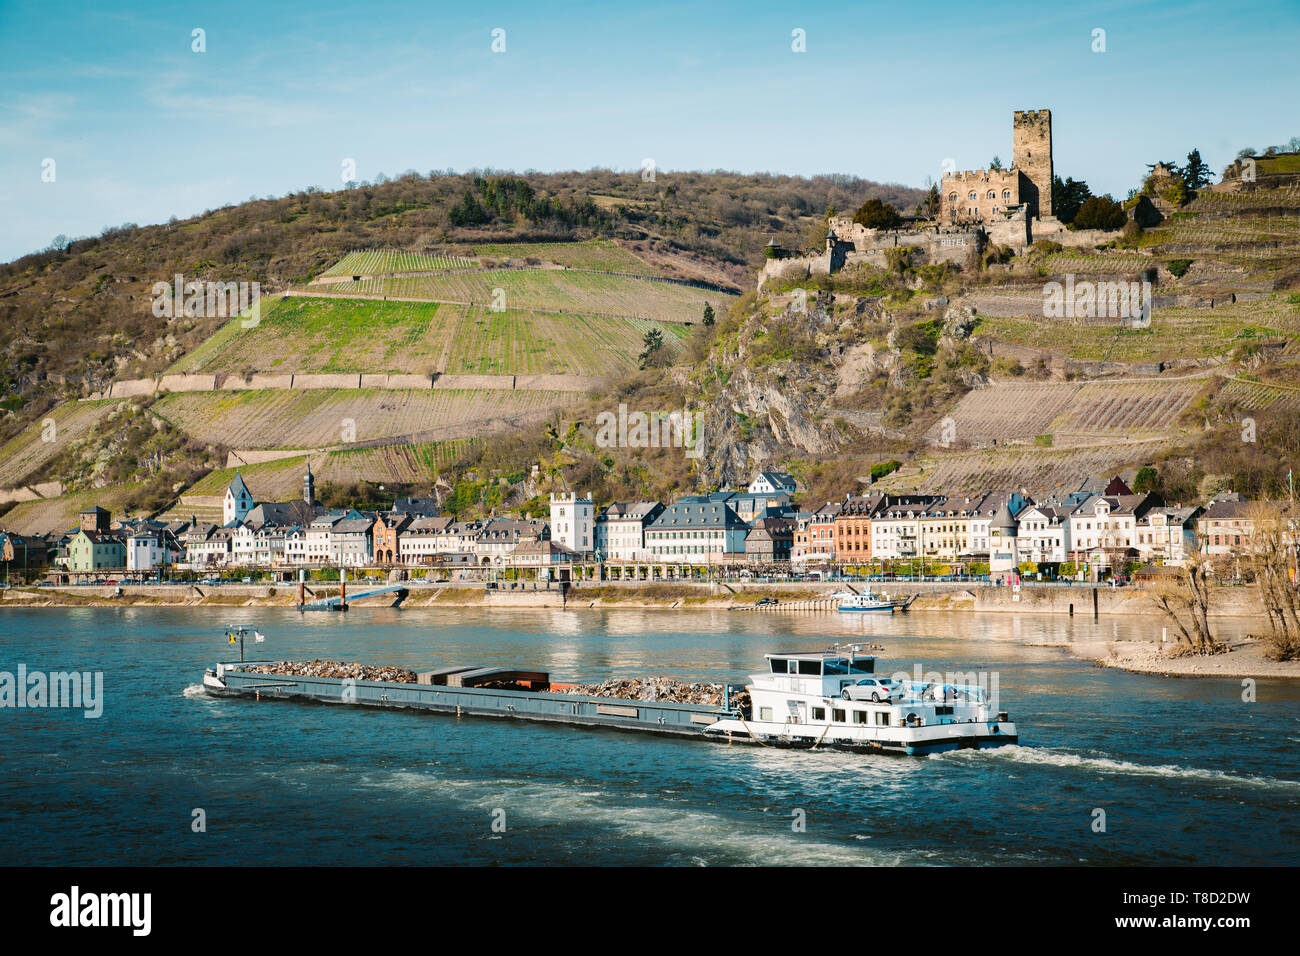 Belle vue sur la ville historique de Kaub Burg Pfalzgrafenstein célèbre avec le long du Rhin sur une magnifique journée ensoleillée avec ciel bleu au printemps, Rheinla Banque D'Images